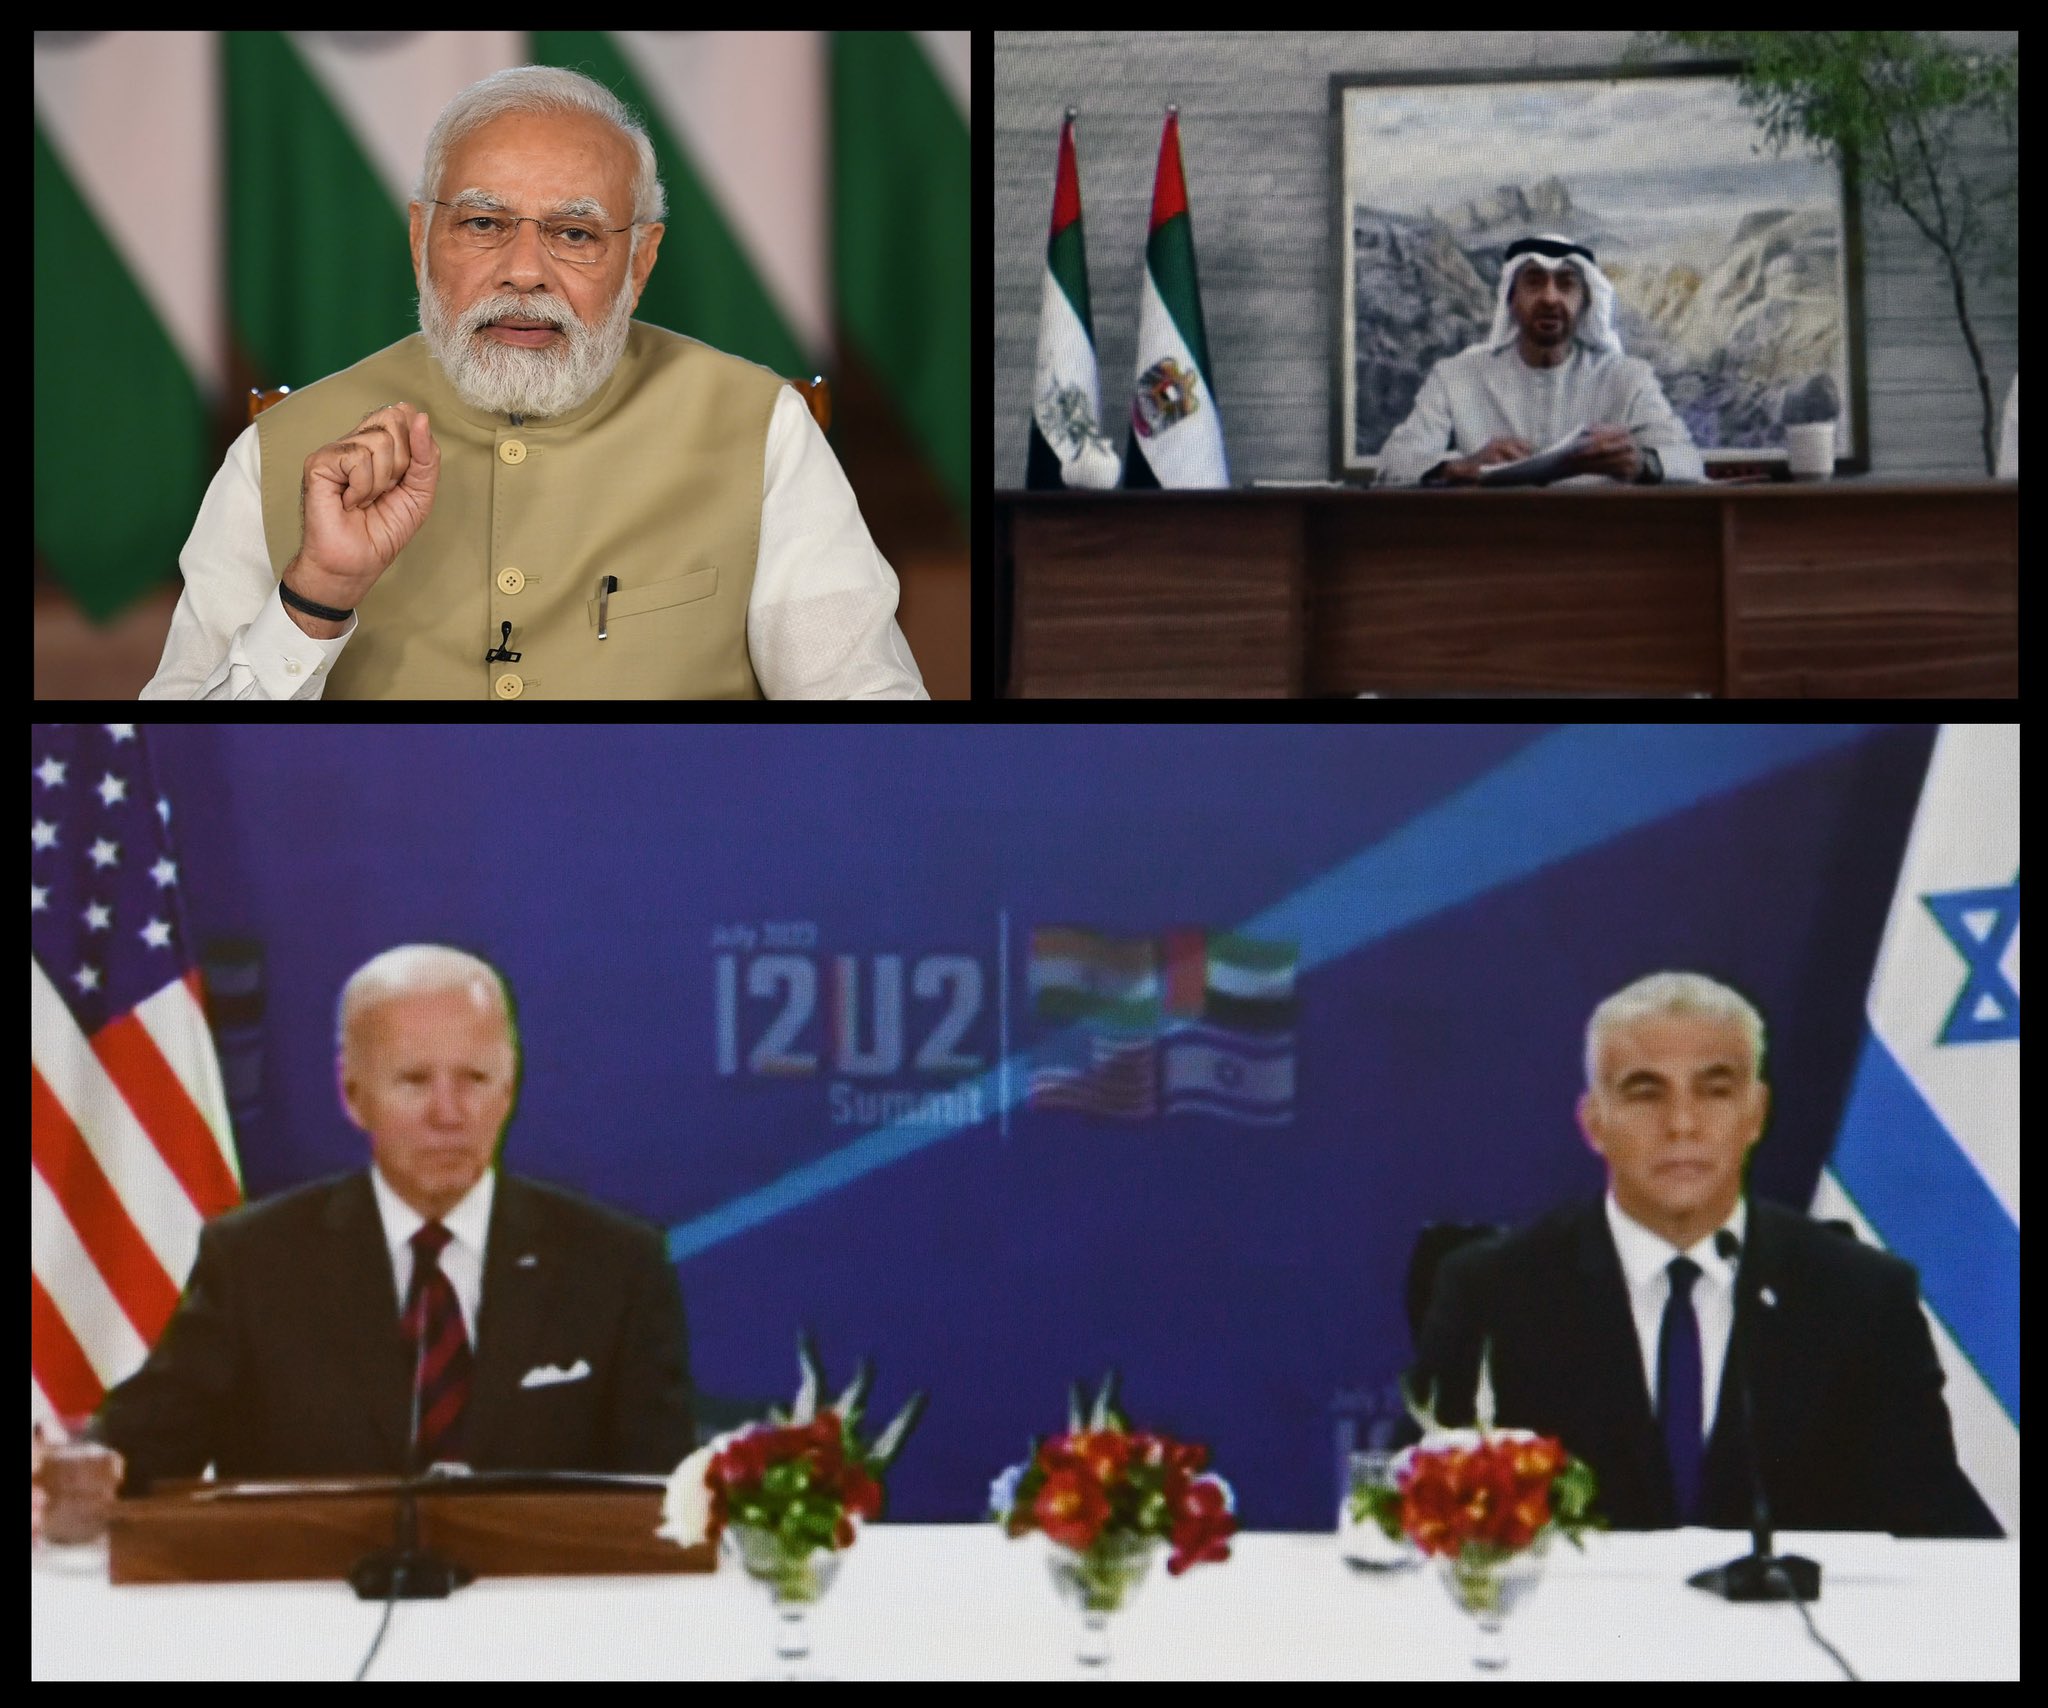 I2U2 Summit : 4 देशों के मंच I2U2 का एजेंडा प्रगतिशील और सकारात्मक- पीएम मोदी